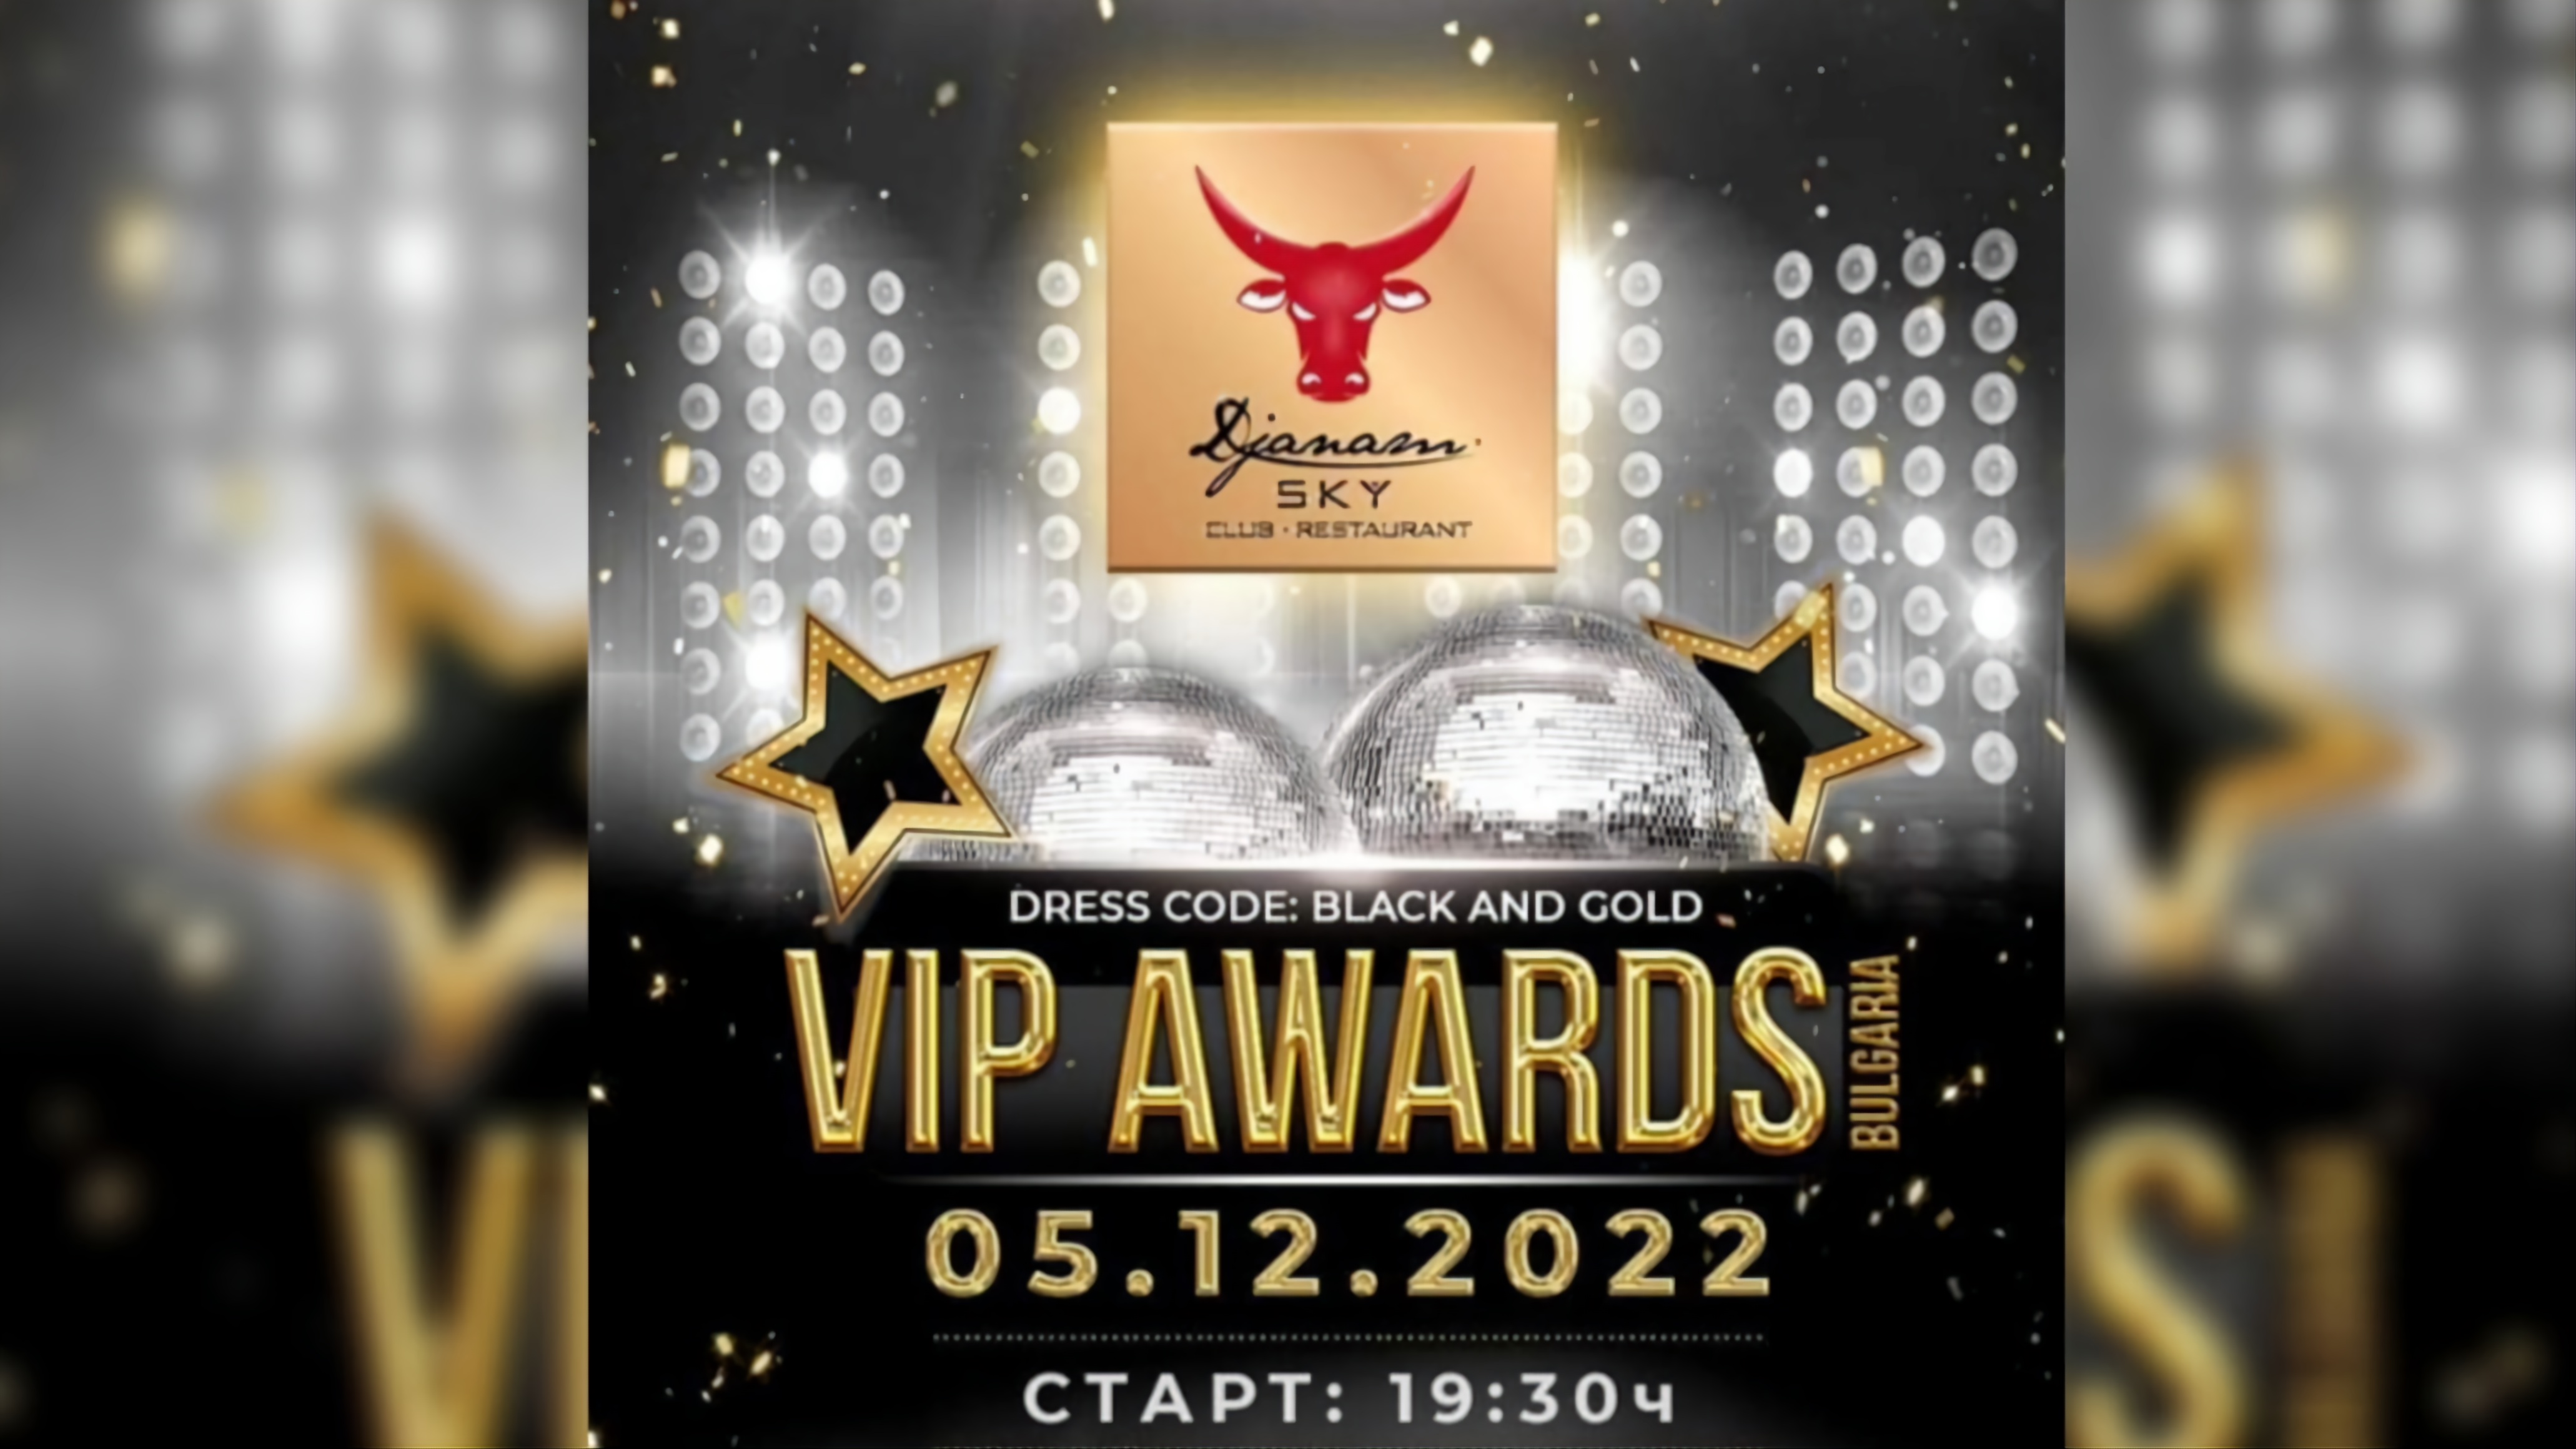 VIP AWARDS 2022 събира най-популярните личности в Djanam Sky Club на 5-ти декември